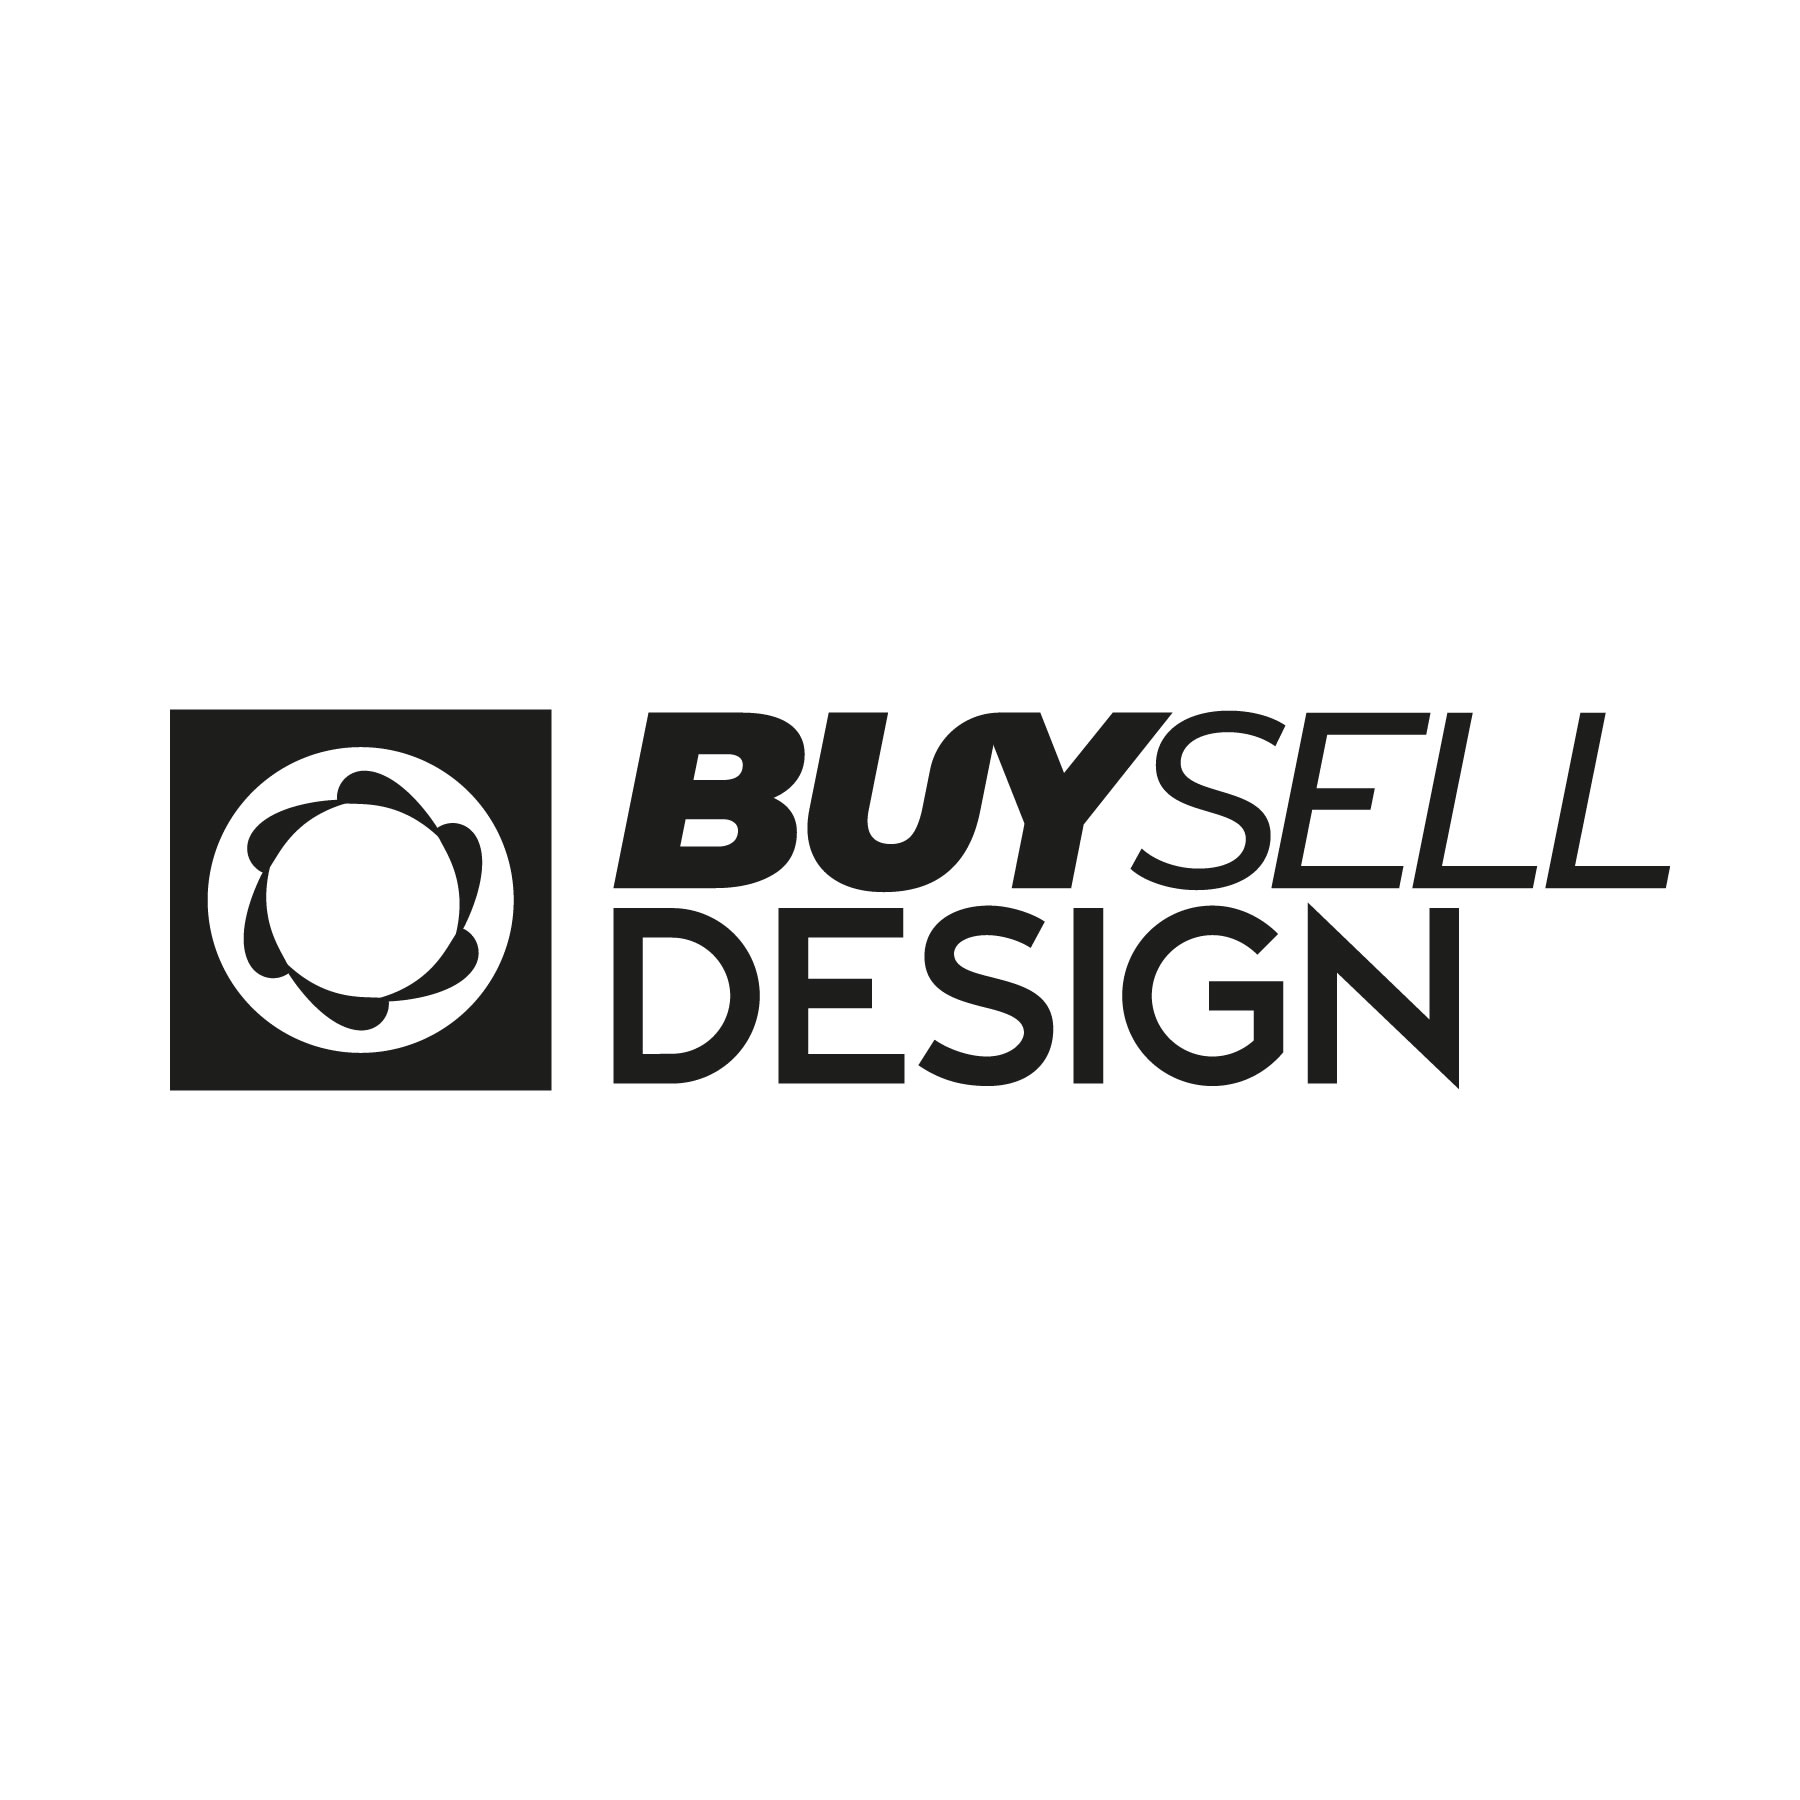 Buy Sell Design Logo